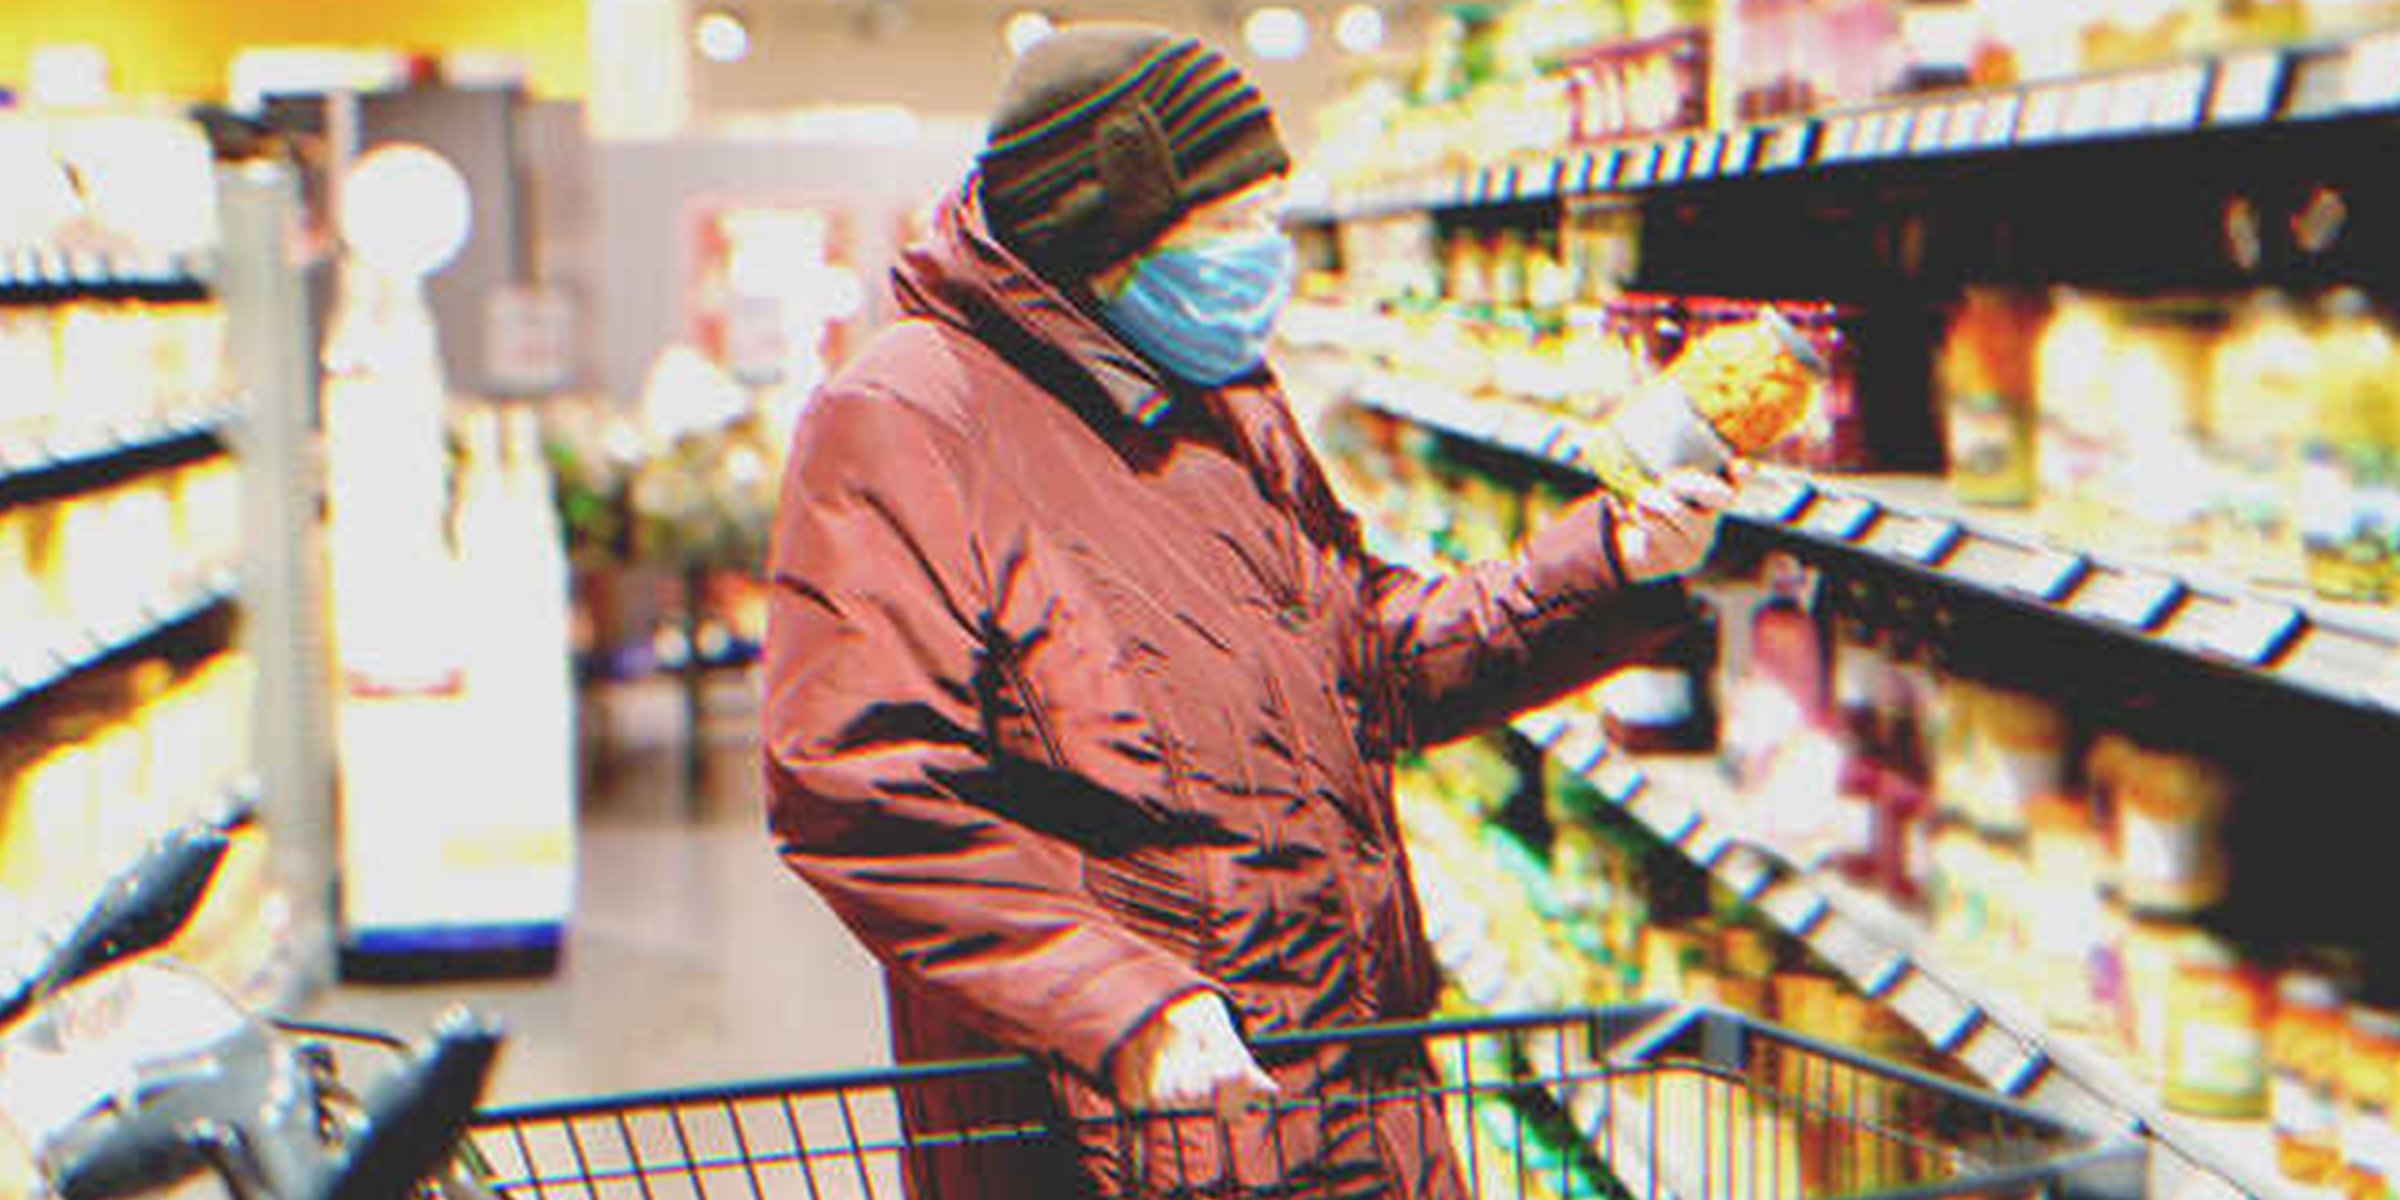 Frau im Supermarkt mit Maske | Quelle: Shutterstock